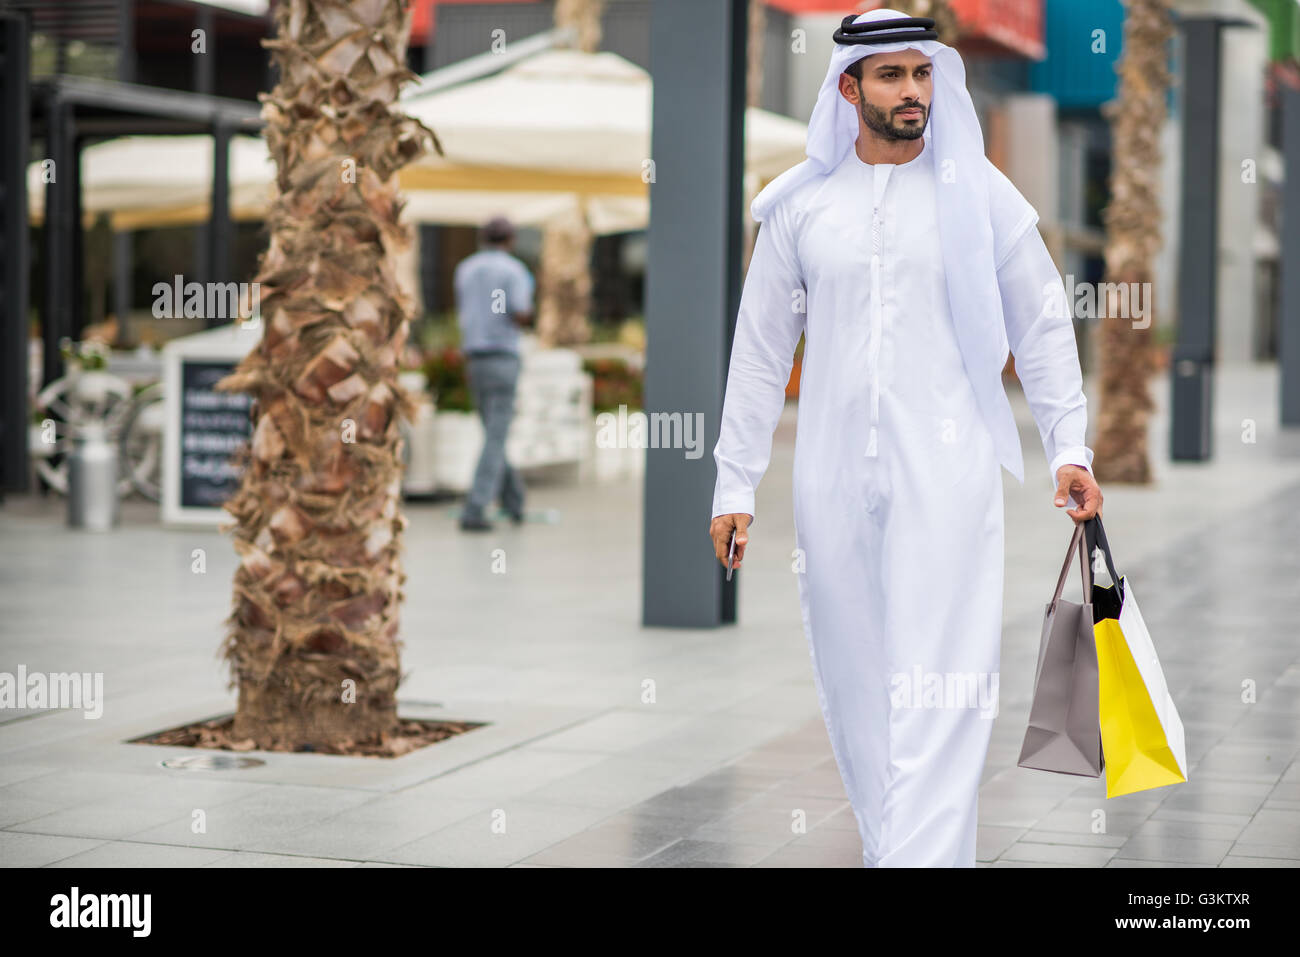 Mann trägt traditionelle orientalische Kleidung zu Fuß entlang der Straße  Shopping Tragetaschen, Dubai, Vereinigte Arabische Emirate Stockfotografie  - Alamy